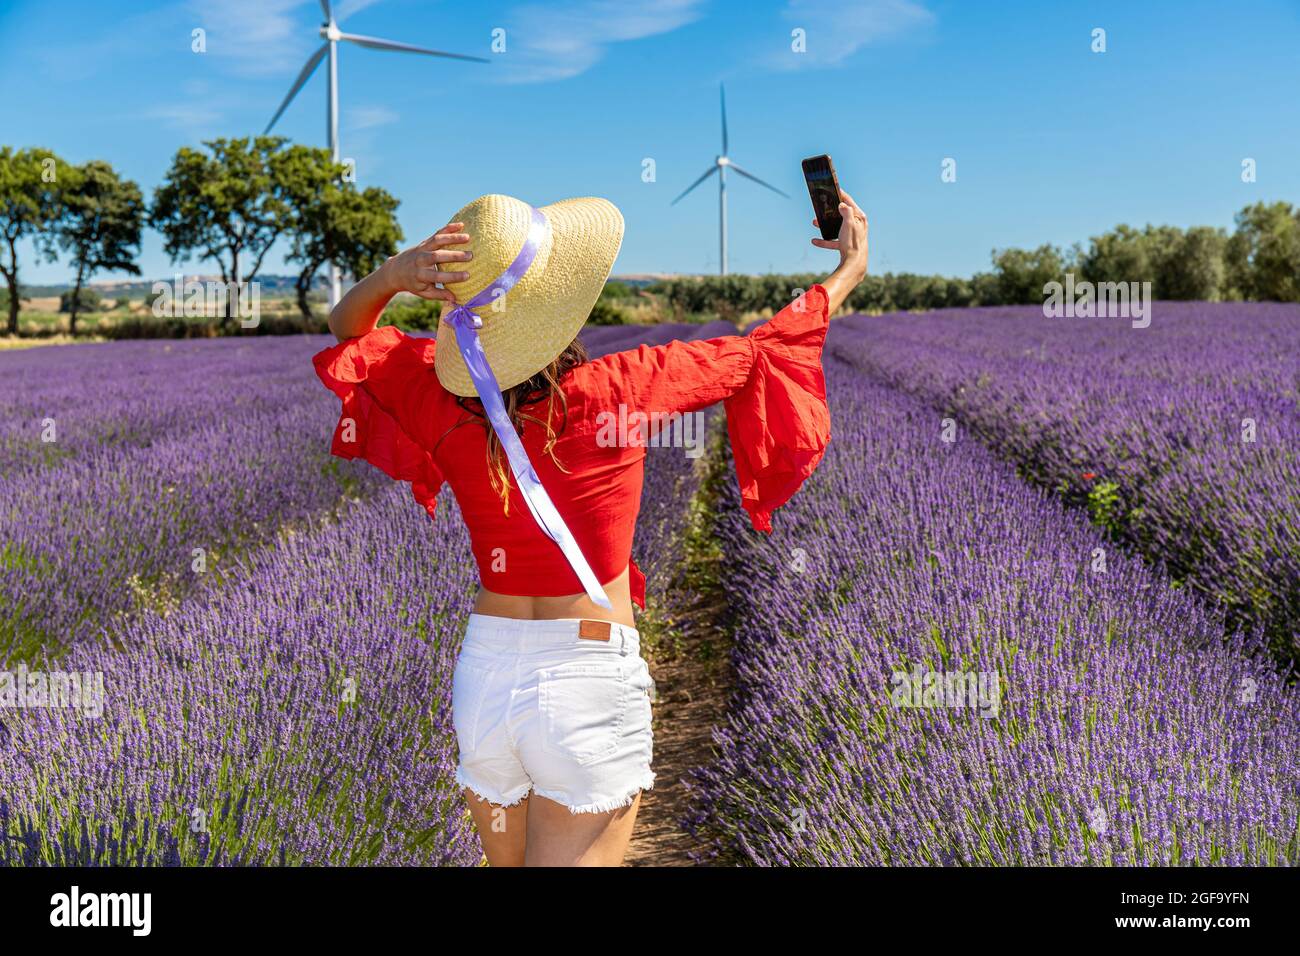 Rückansicht einer Frau mit Strohhut, die ein Selfie in einem Lavendelfeld gemacht hat.Bäume und Windturbinen im Hintergrund. Konzept von Glück und Wohlbefinden Stockfoto